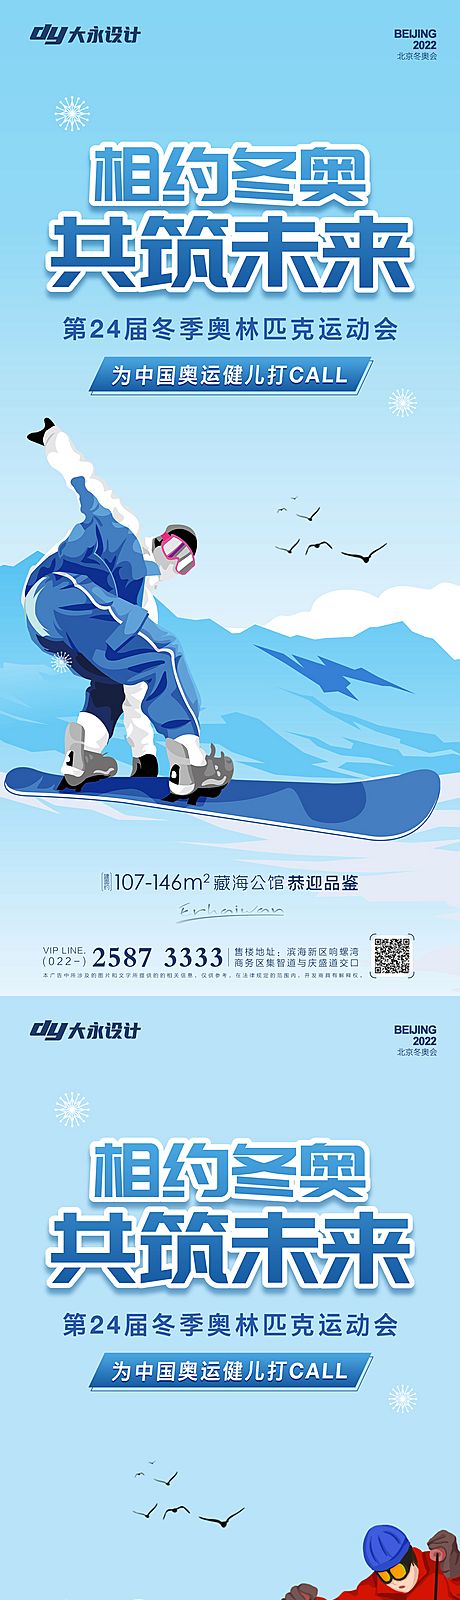 仙图网-冬奥会房地产海报